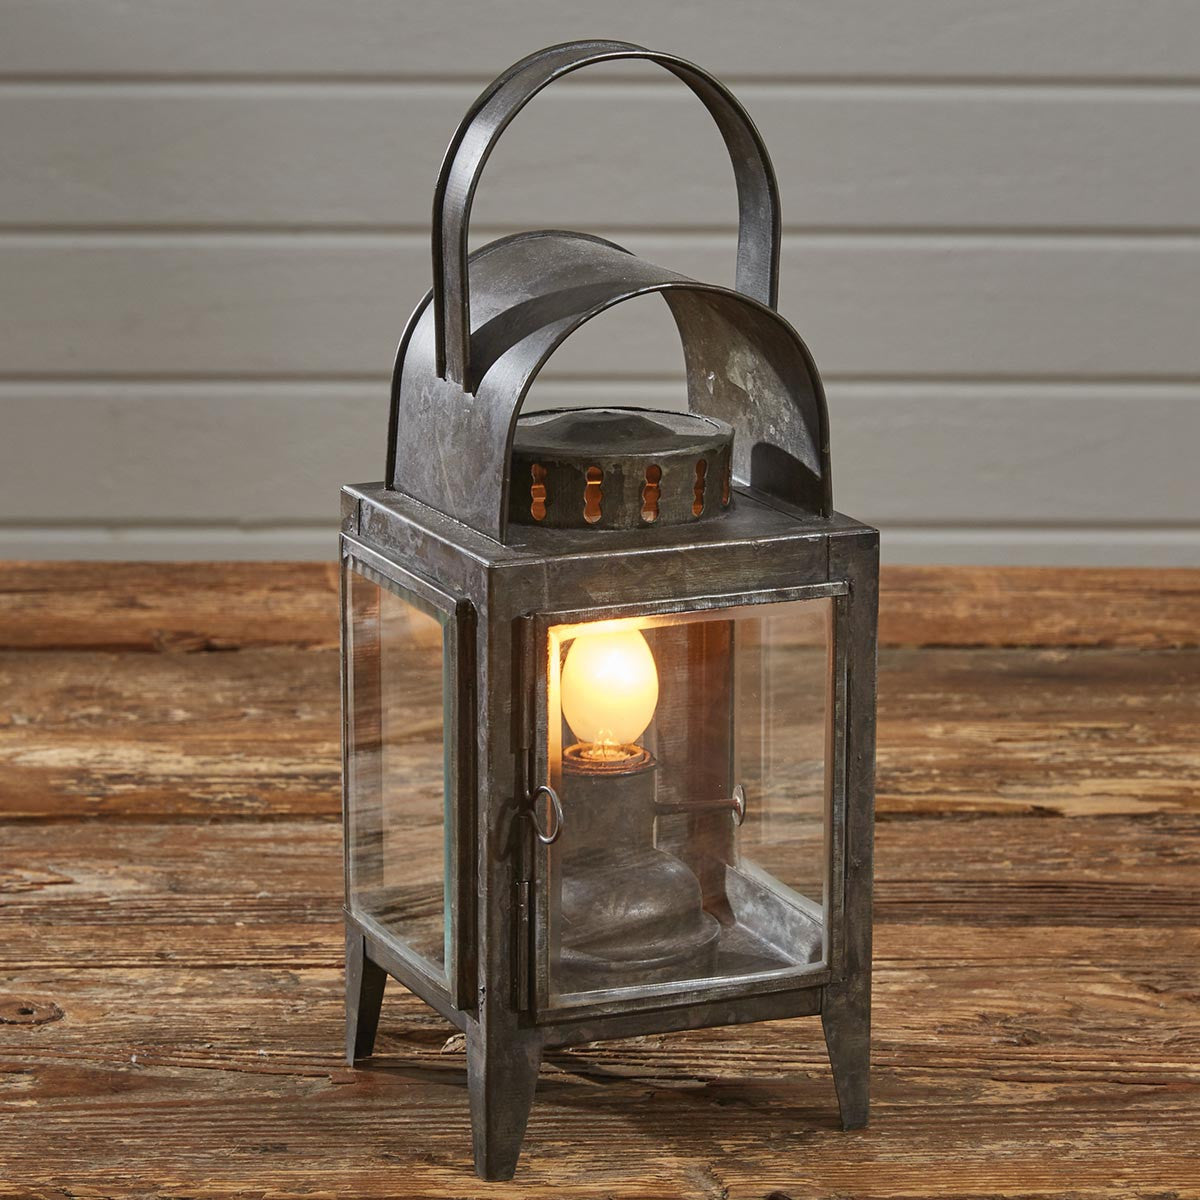 Oil Lantern Bevel Glass Lamp - Park Designs